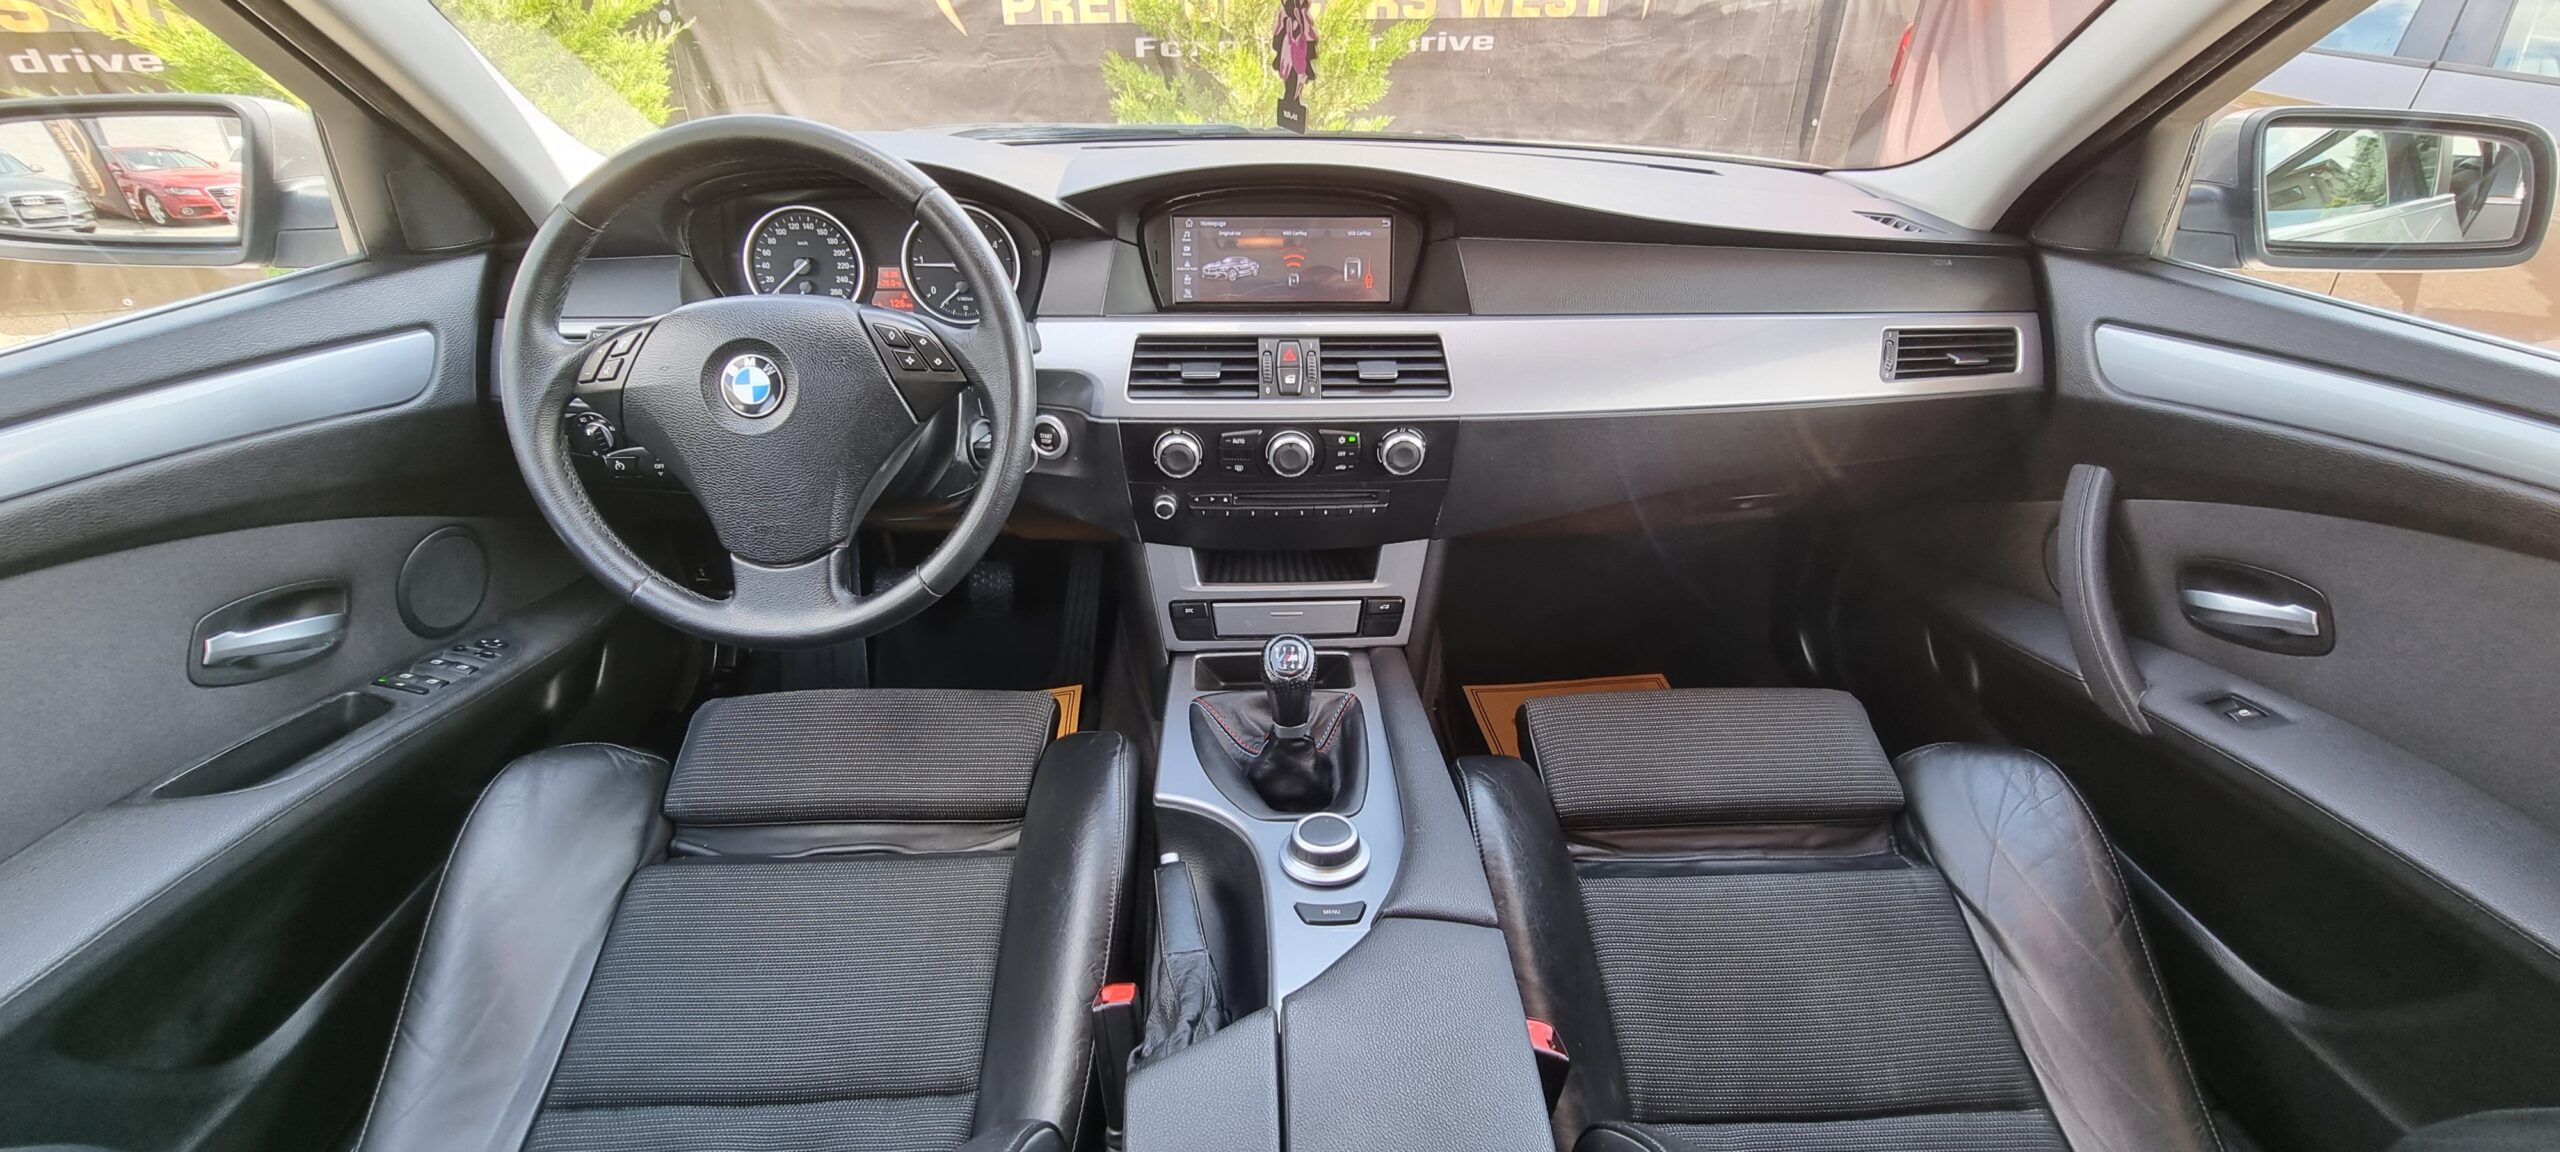 BMW SERIA 5, 2.0 DIESEL, 177CP, AN 2008